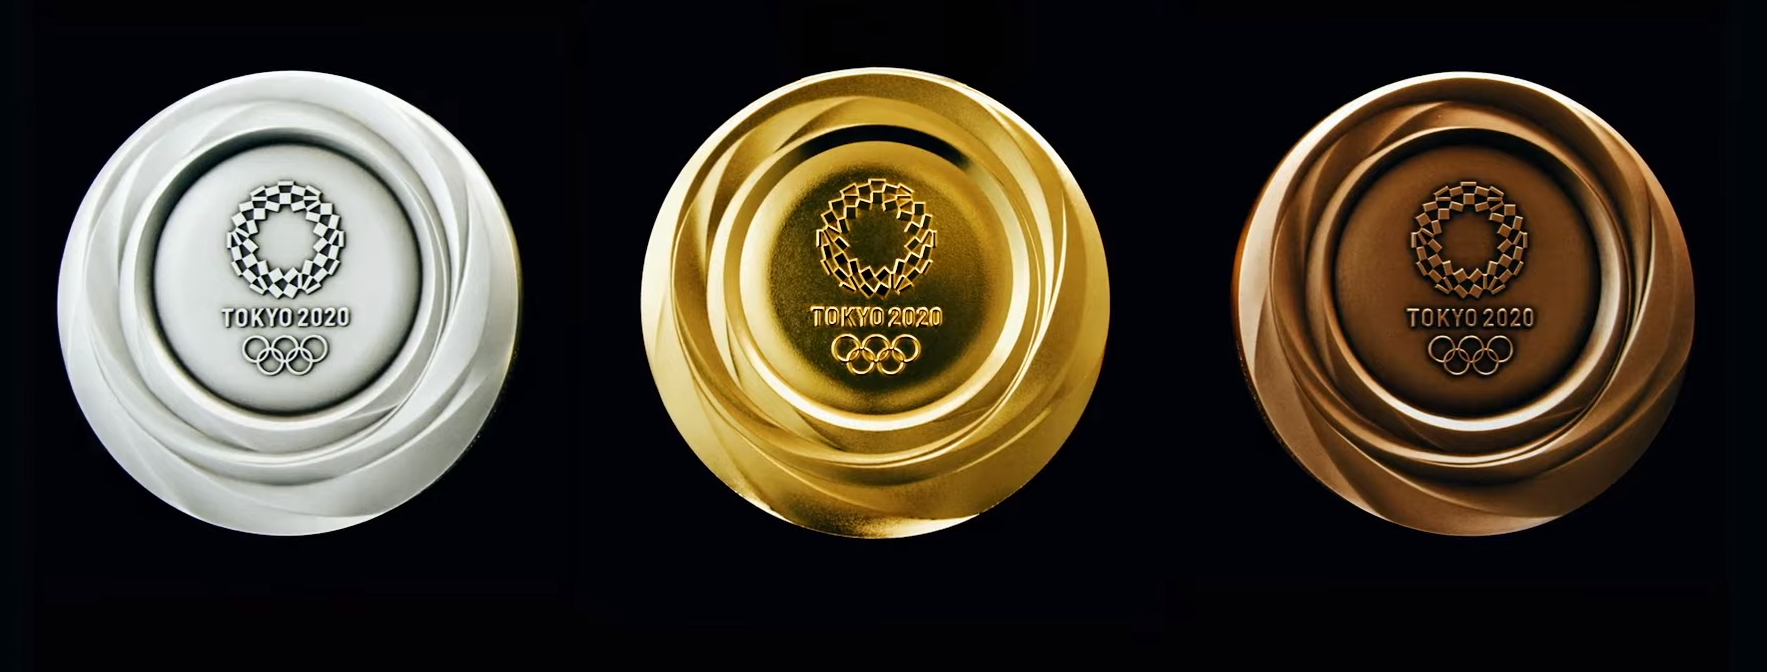 日媒:东京2020年奥运会奖牌将由回收材料制成